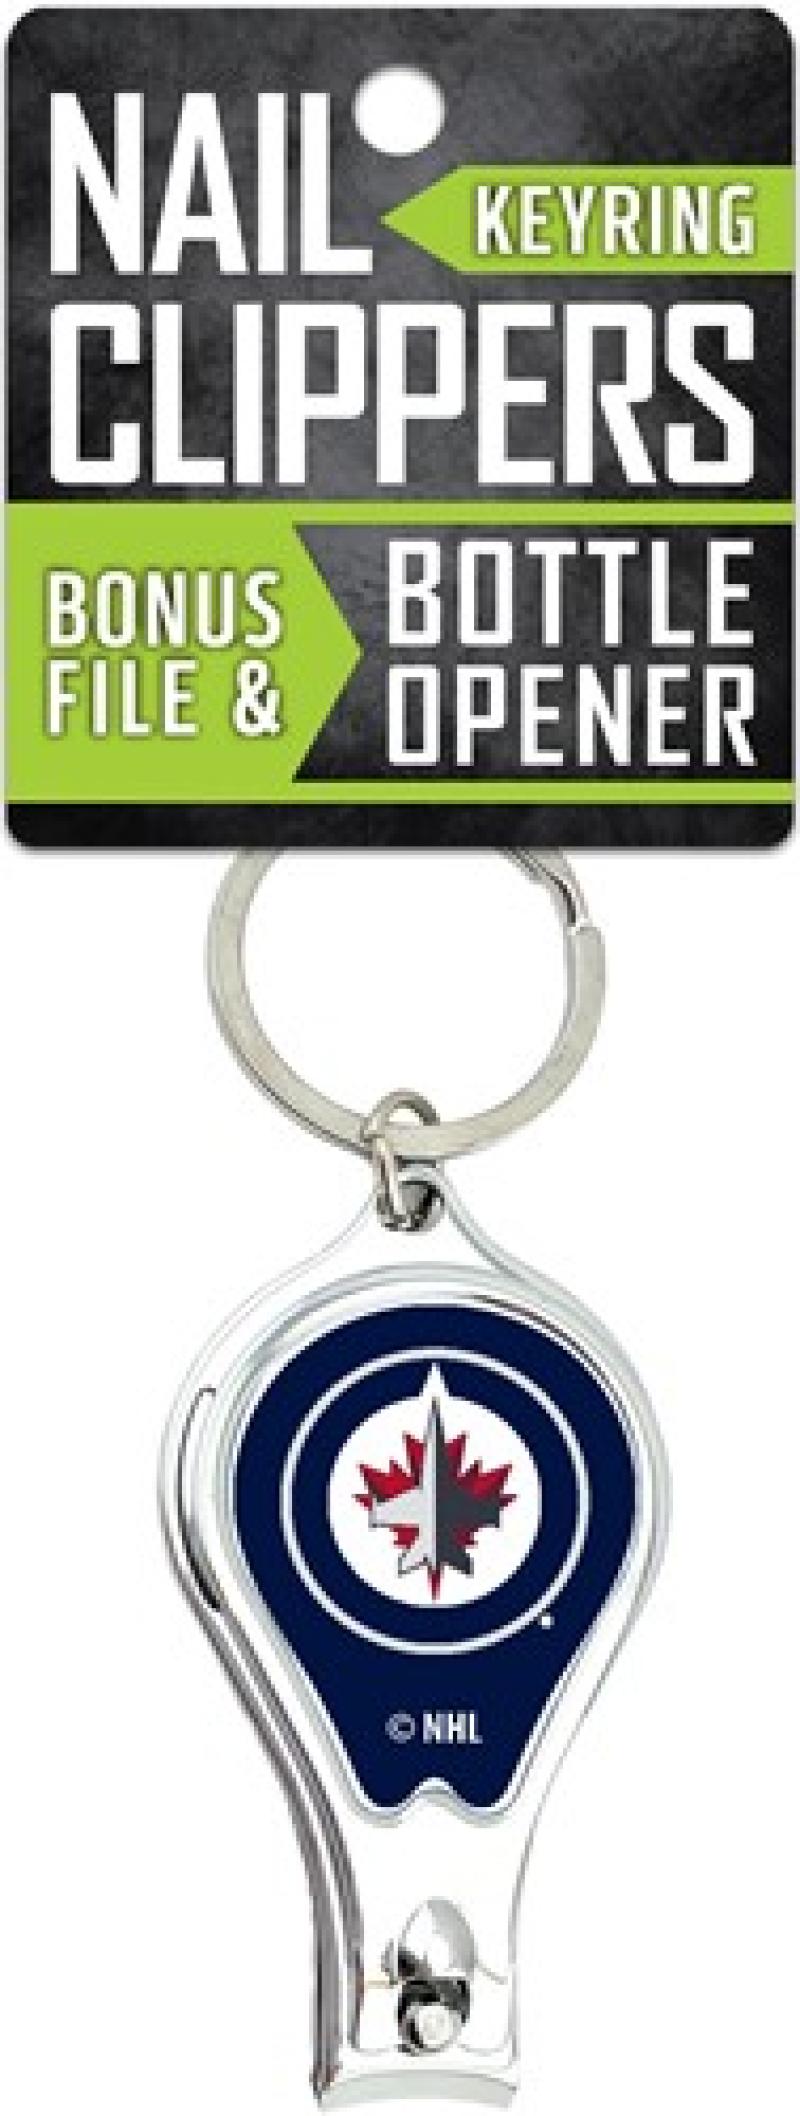 Winnipeg Jets Nail Clipper Keyring w/Bonus File & Bottle Opener